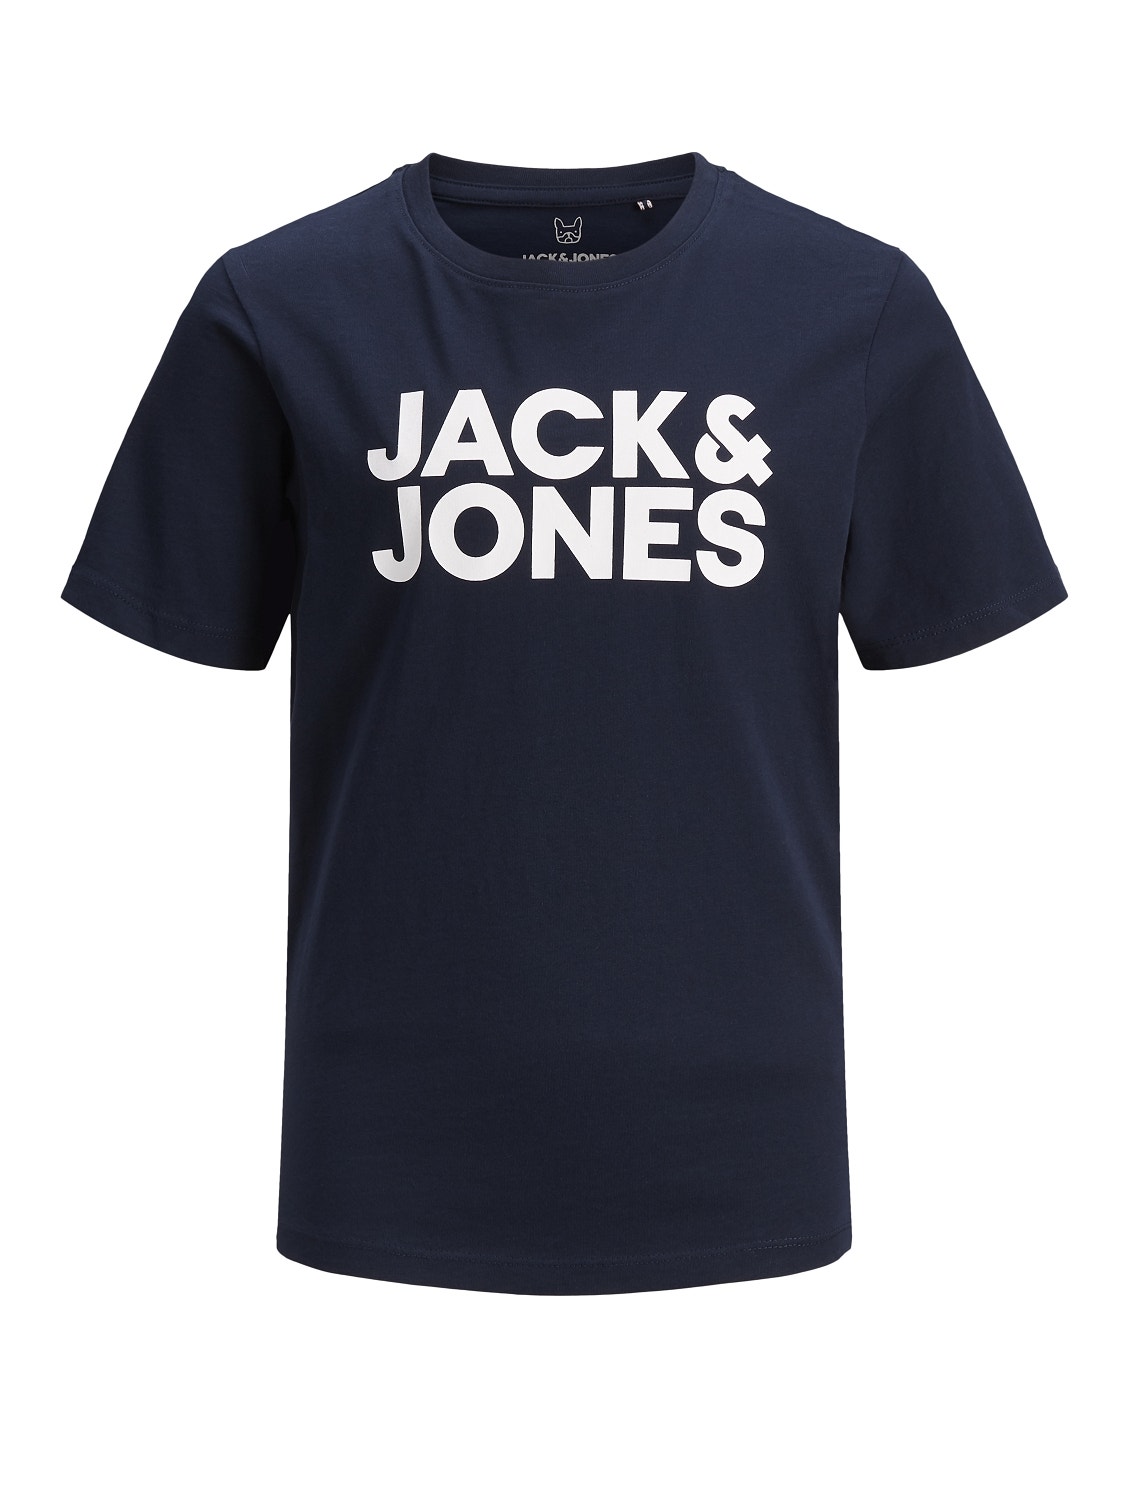 Jack & Jones T-shirt Logo Para meninos -Navy Blazer - 12152730